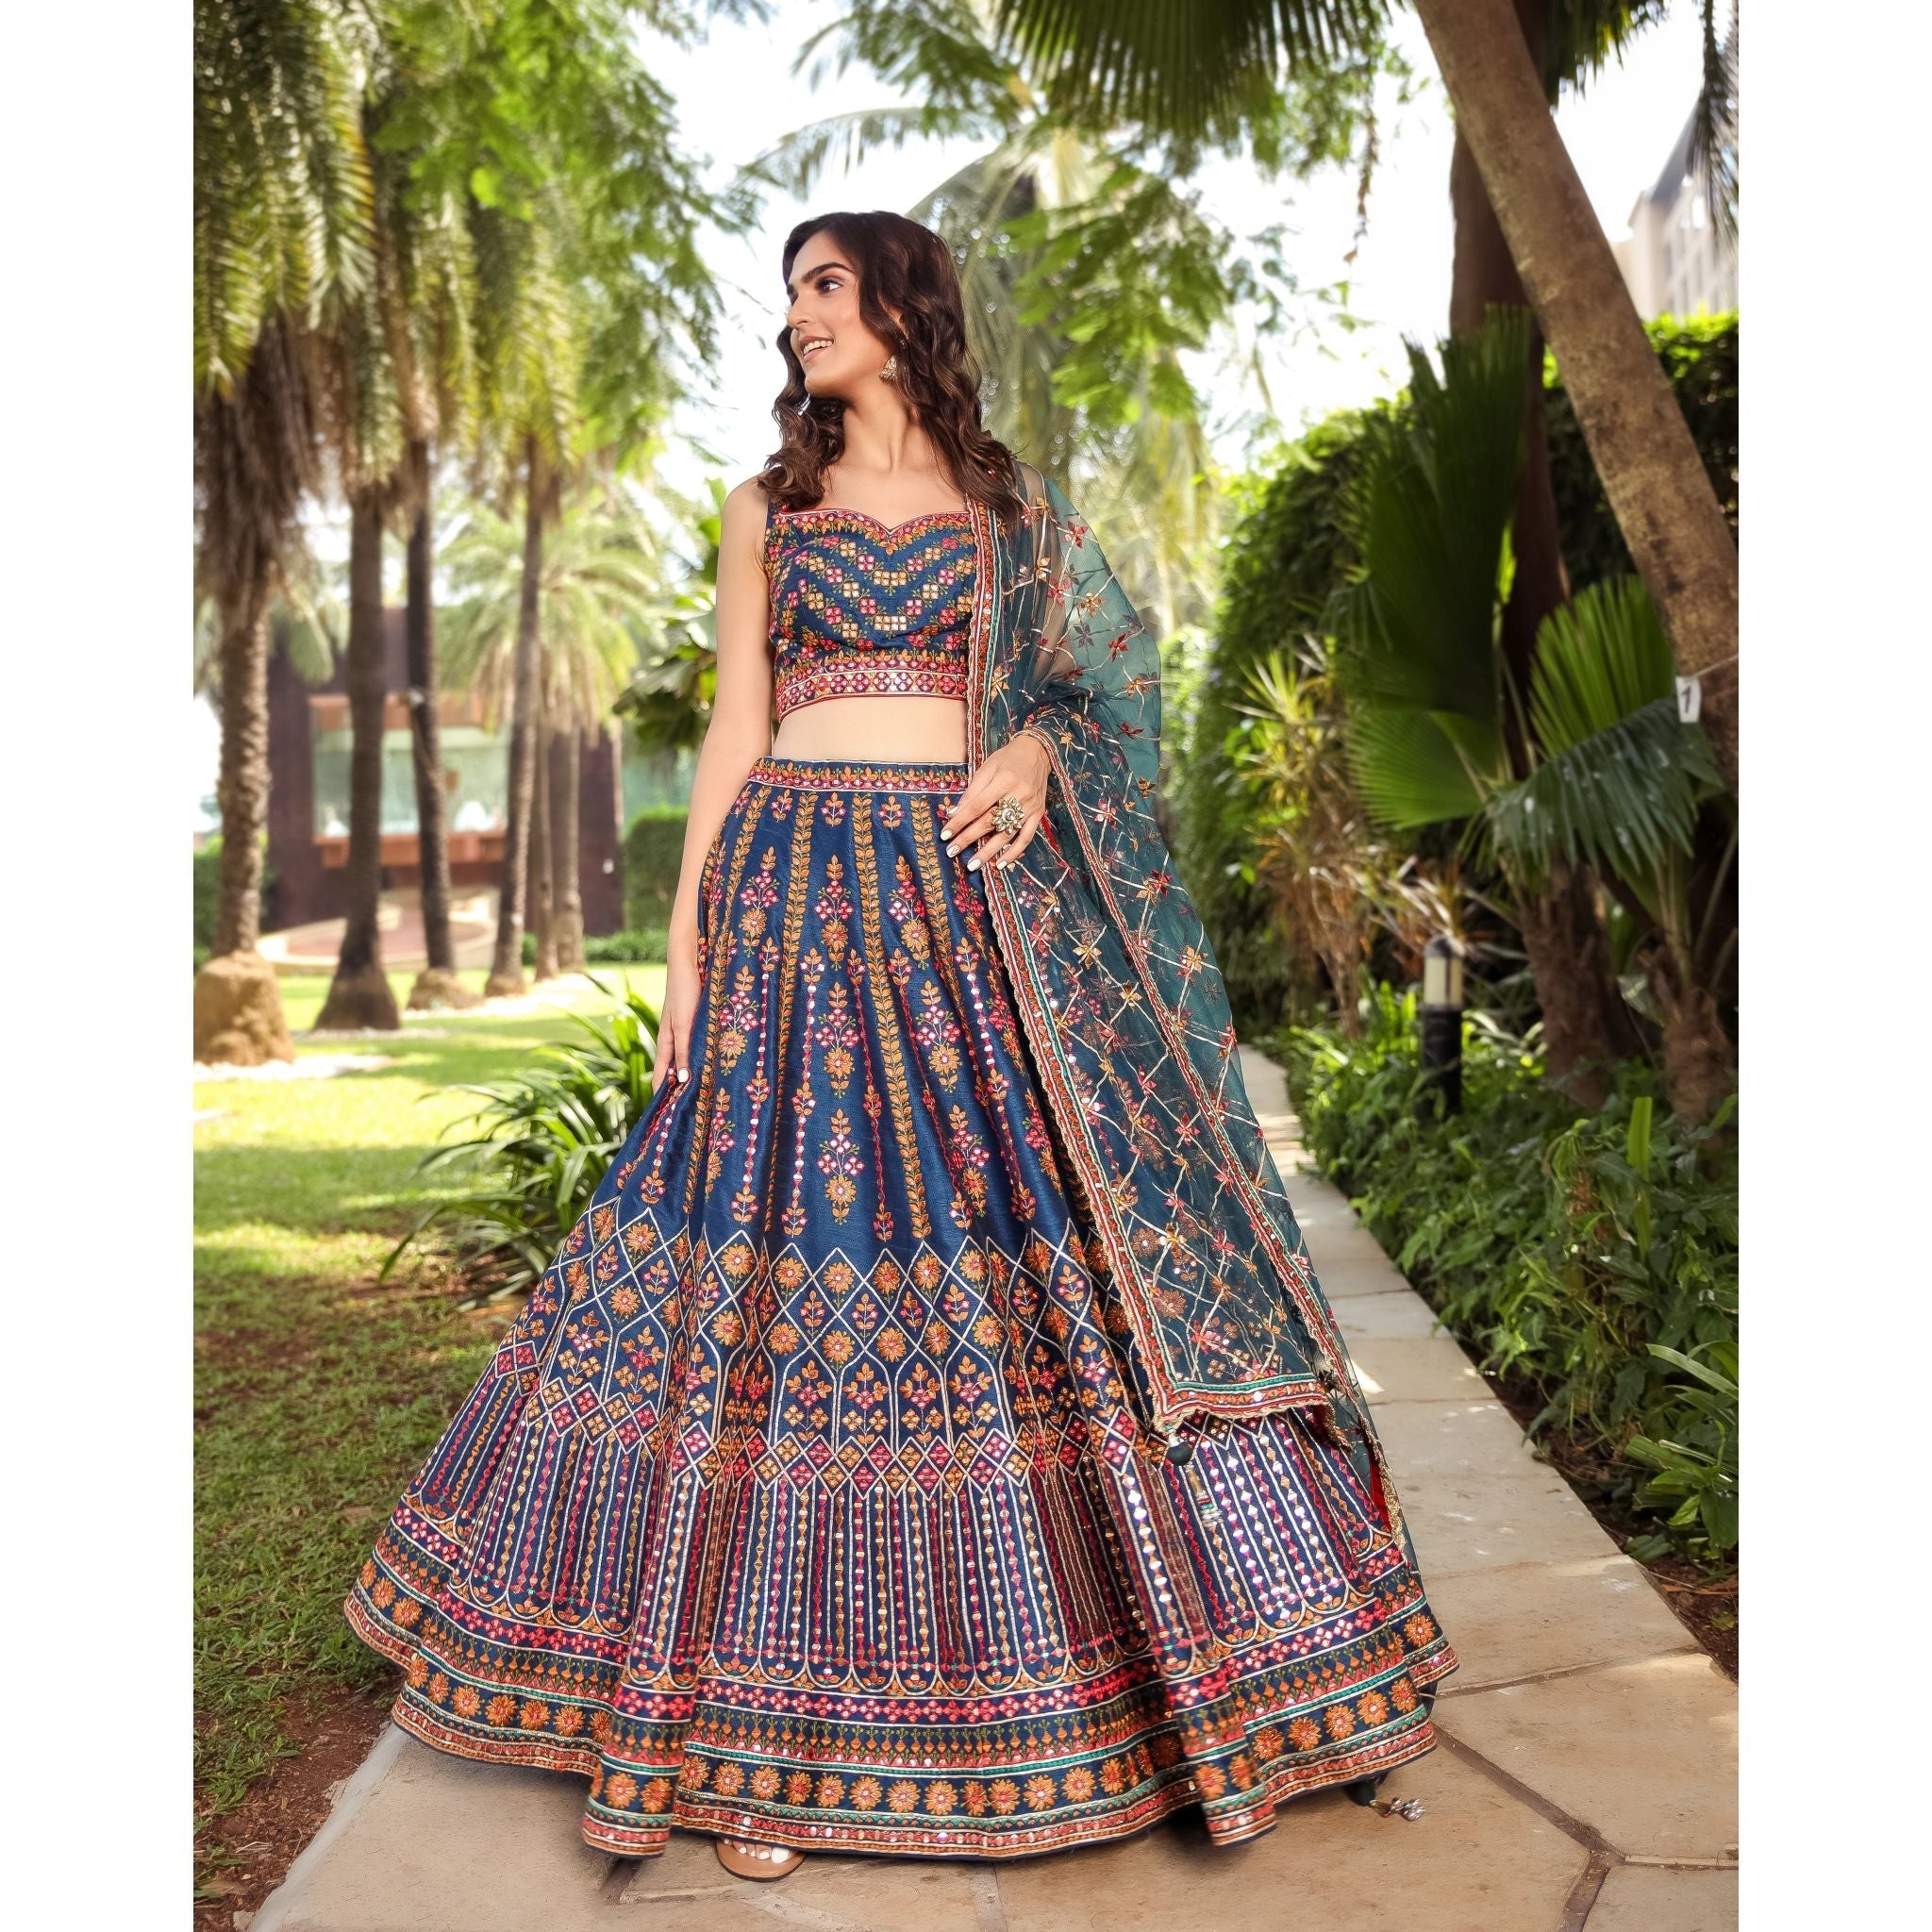 Teal Indigo Mirrorwork Lehenga - Indian Designer Bridal Wedding Outfit